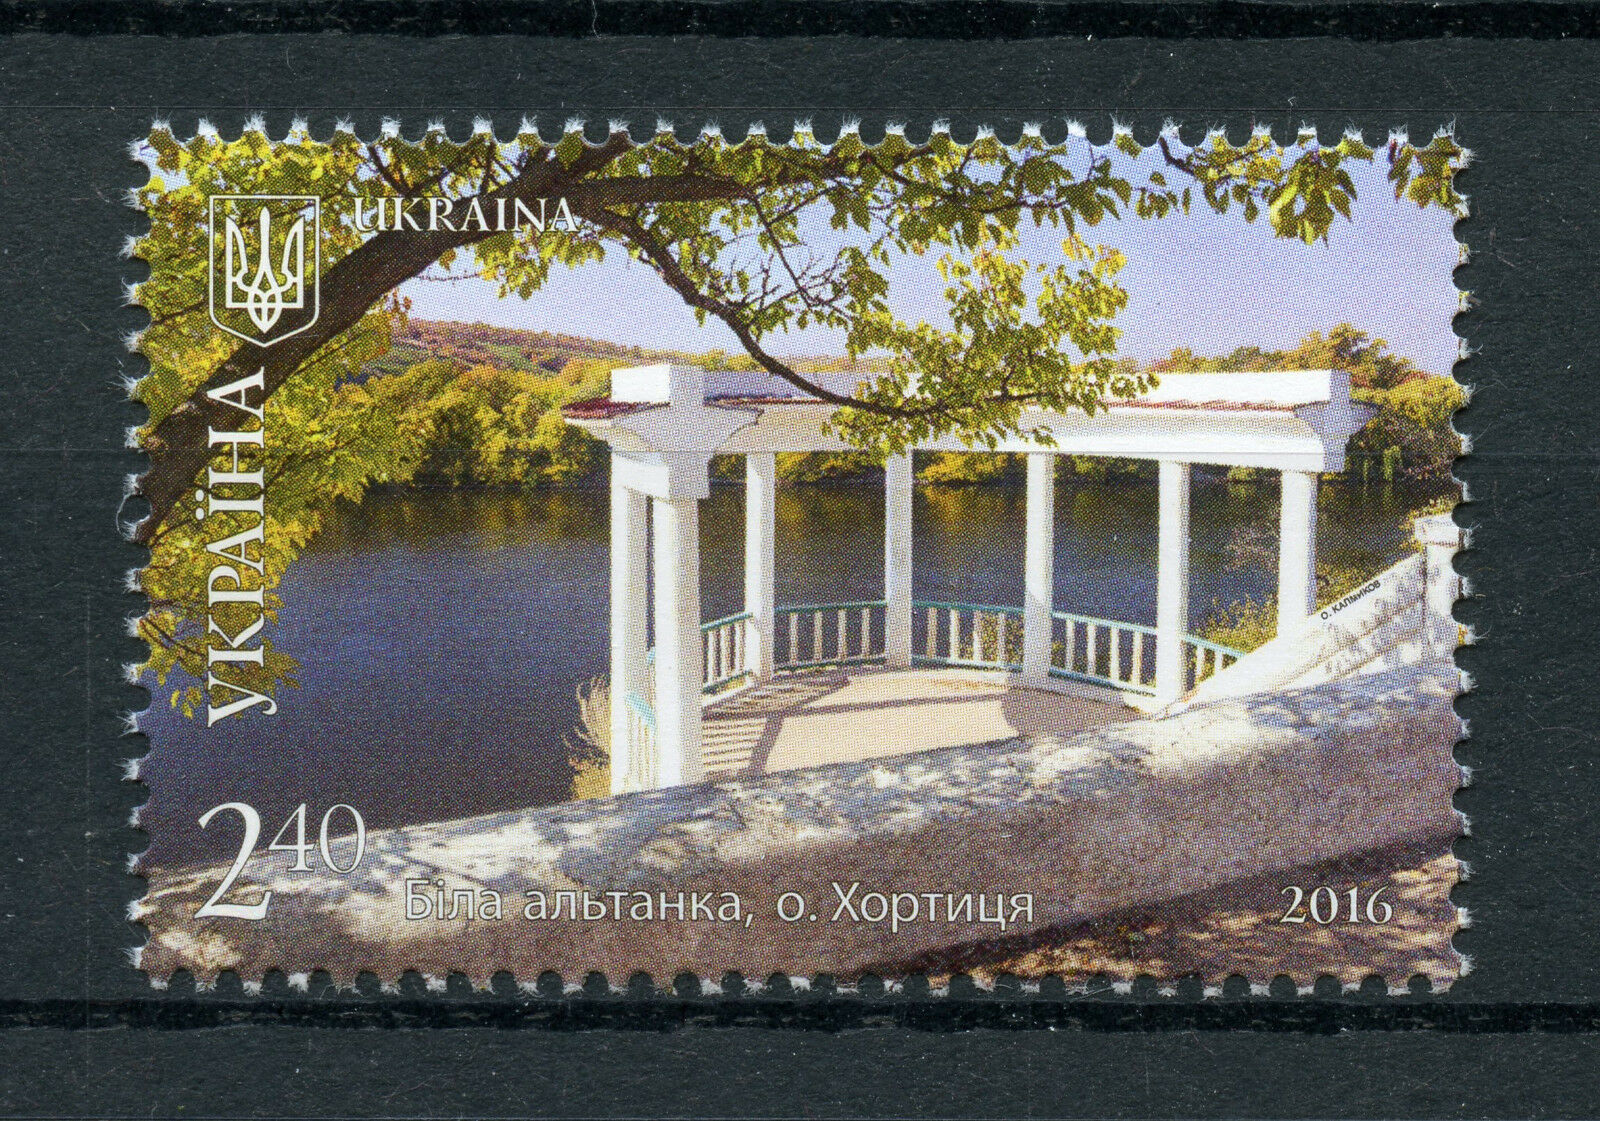 Ukraine 2016 MNH Zaporhizia Region Khortytsia Island 1v Set Tourism Stamps